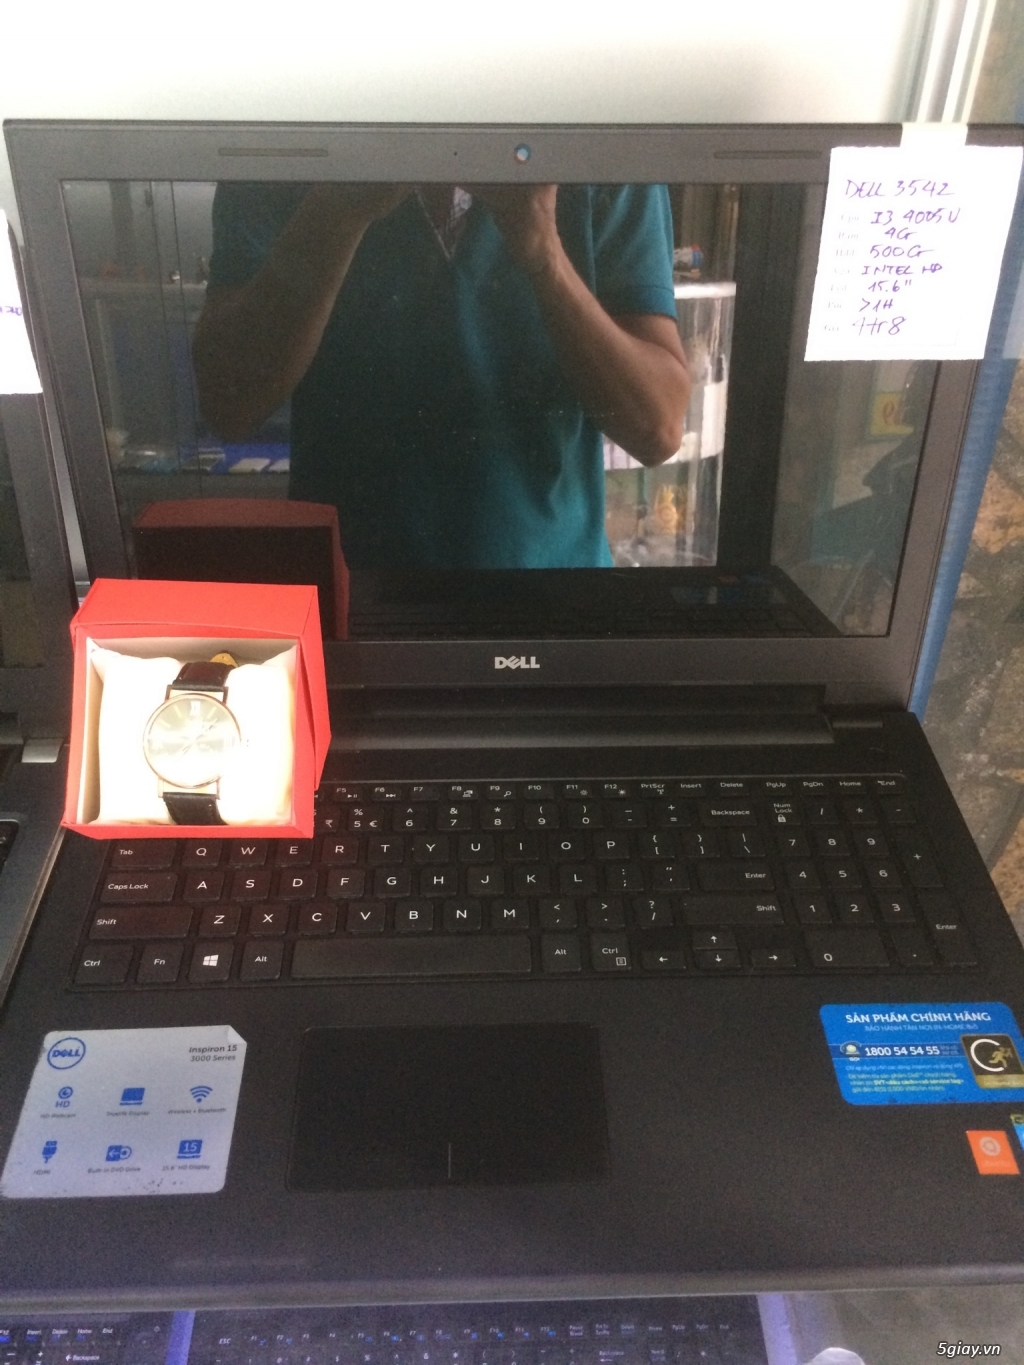 Laptop Acer 4349 I3 2330M Ram 2G_Tặng kèm đồng hồ đeo tay nam tính - 2